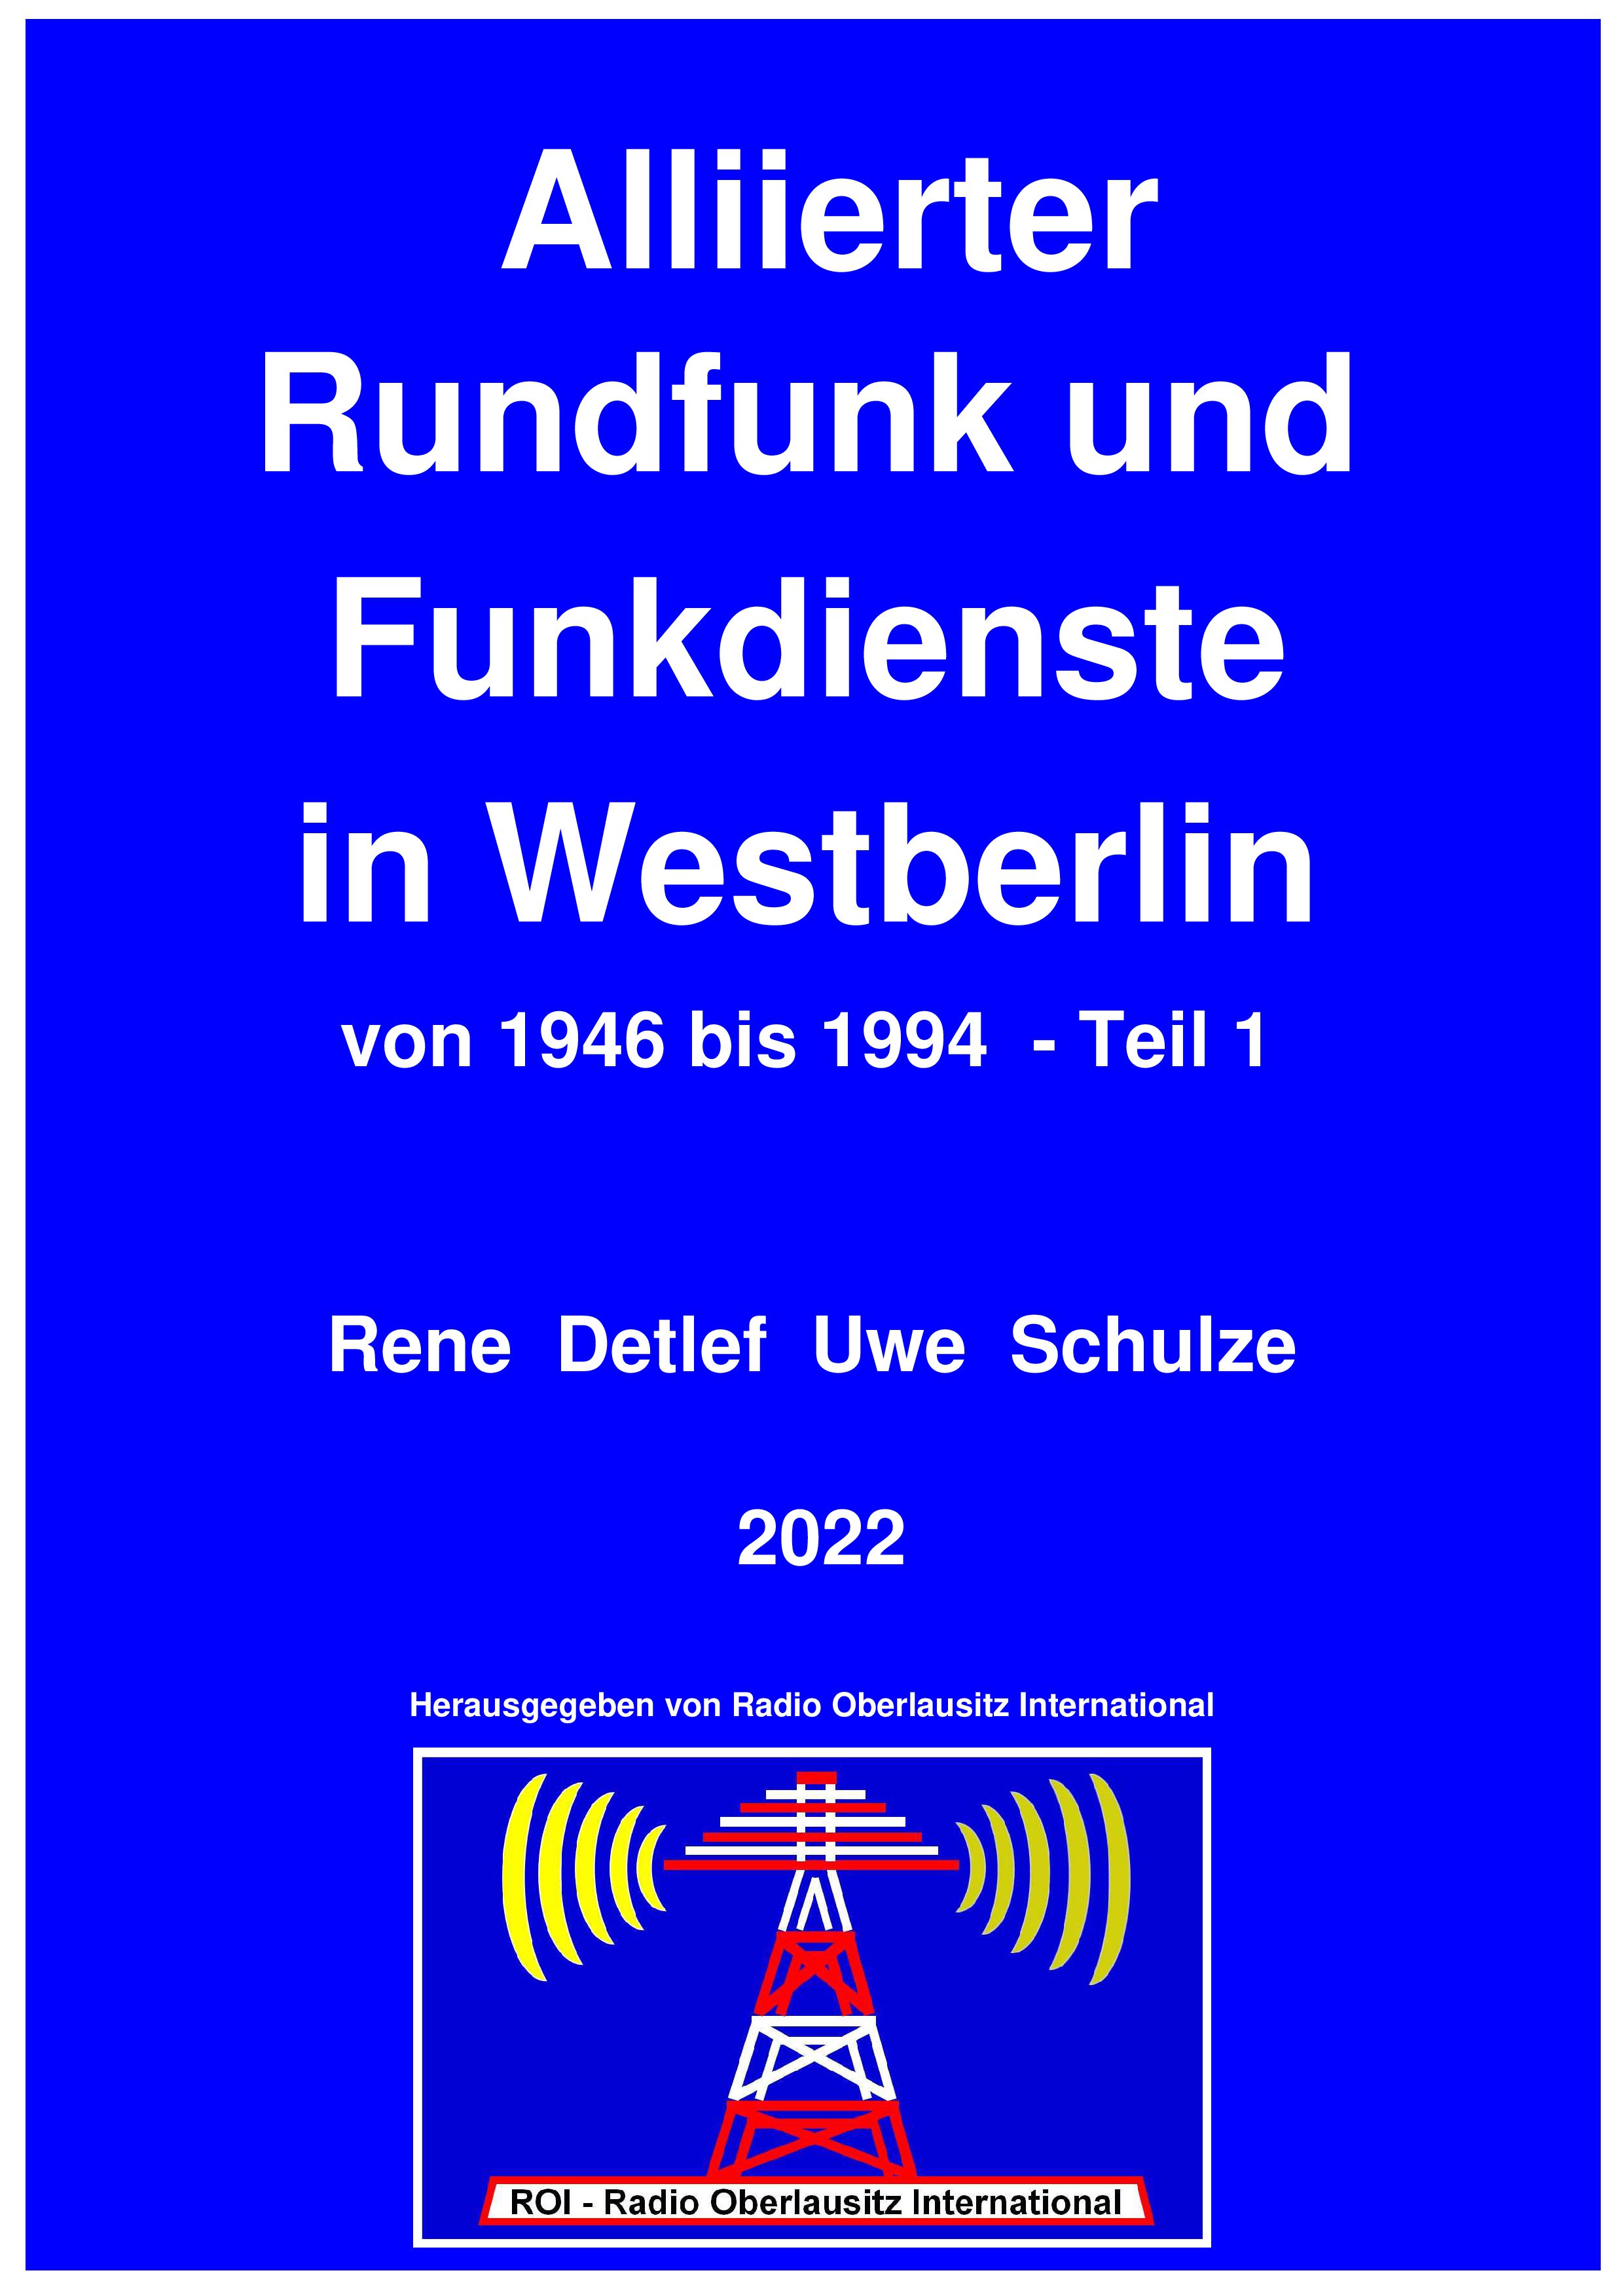 Alliierter Rundfunk und Funkdienste in Westberlin von 1946 bis 1994 - 
Teil 1,  farbig, 615 Seiten, 2022, Leseprobe 